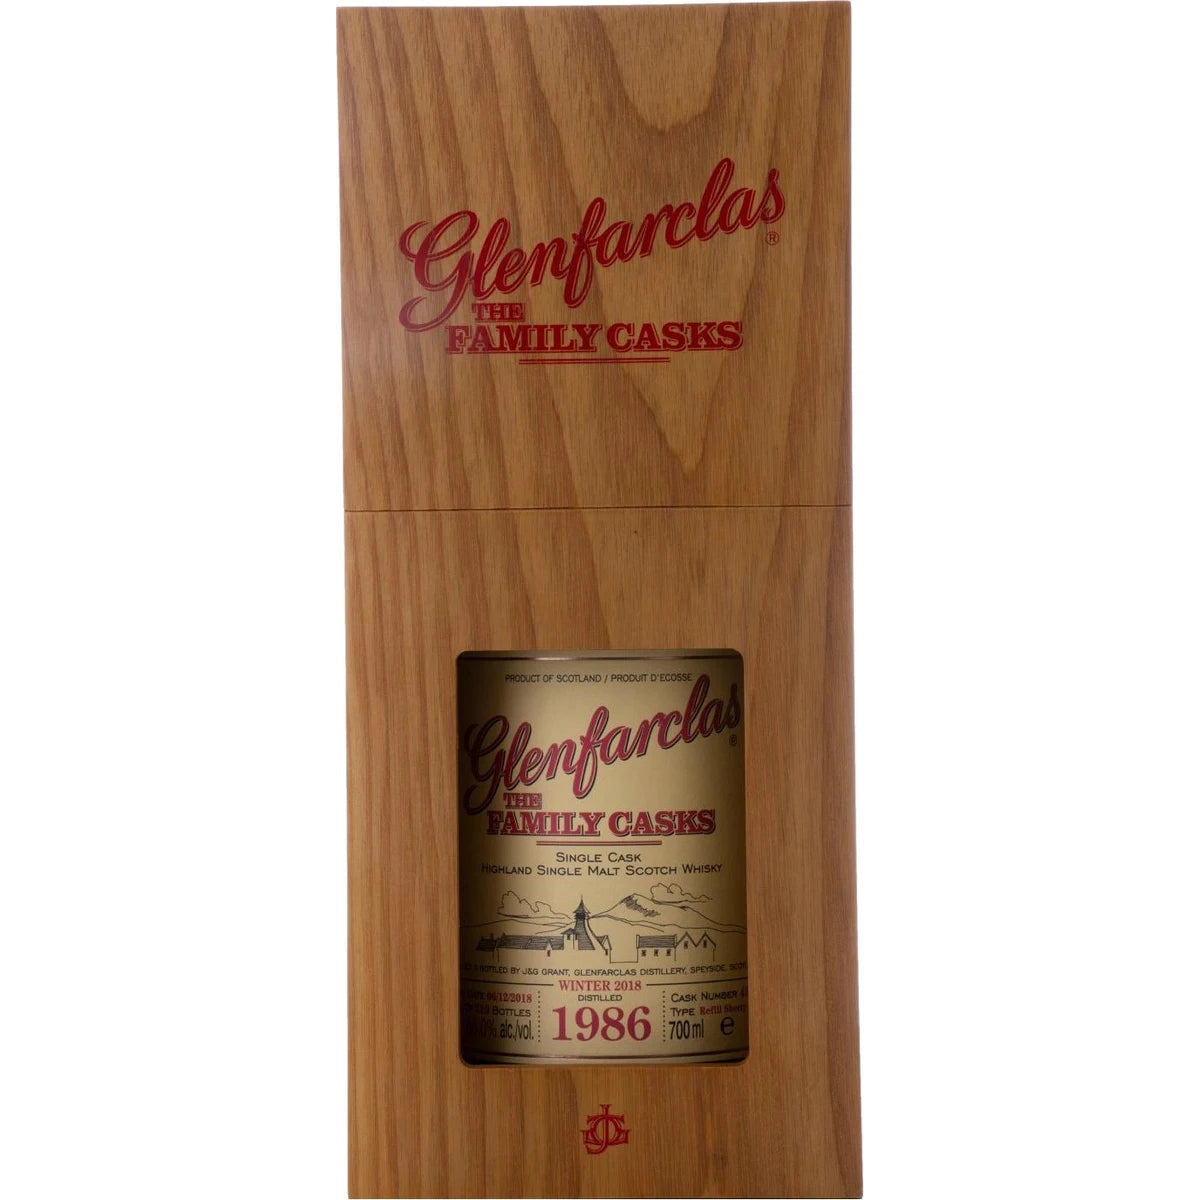 Glenfarclas THE FAMILY CASKS Single Cask WINTER 2018 Refill Sherry Butt 1986 55% Vol. 0,7l in Giftbox